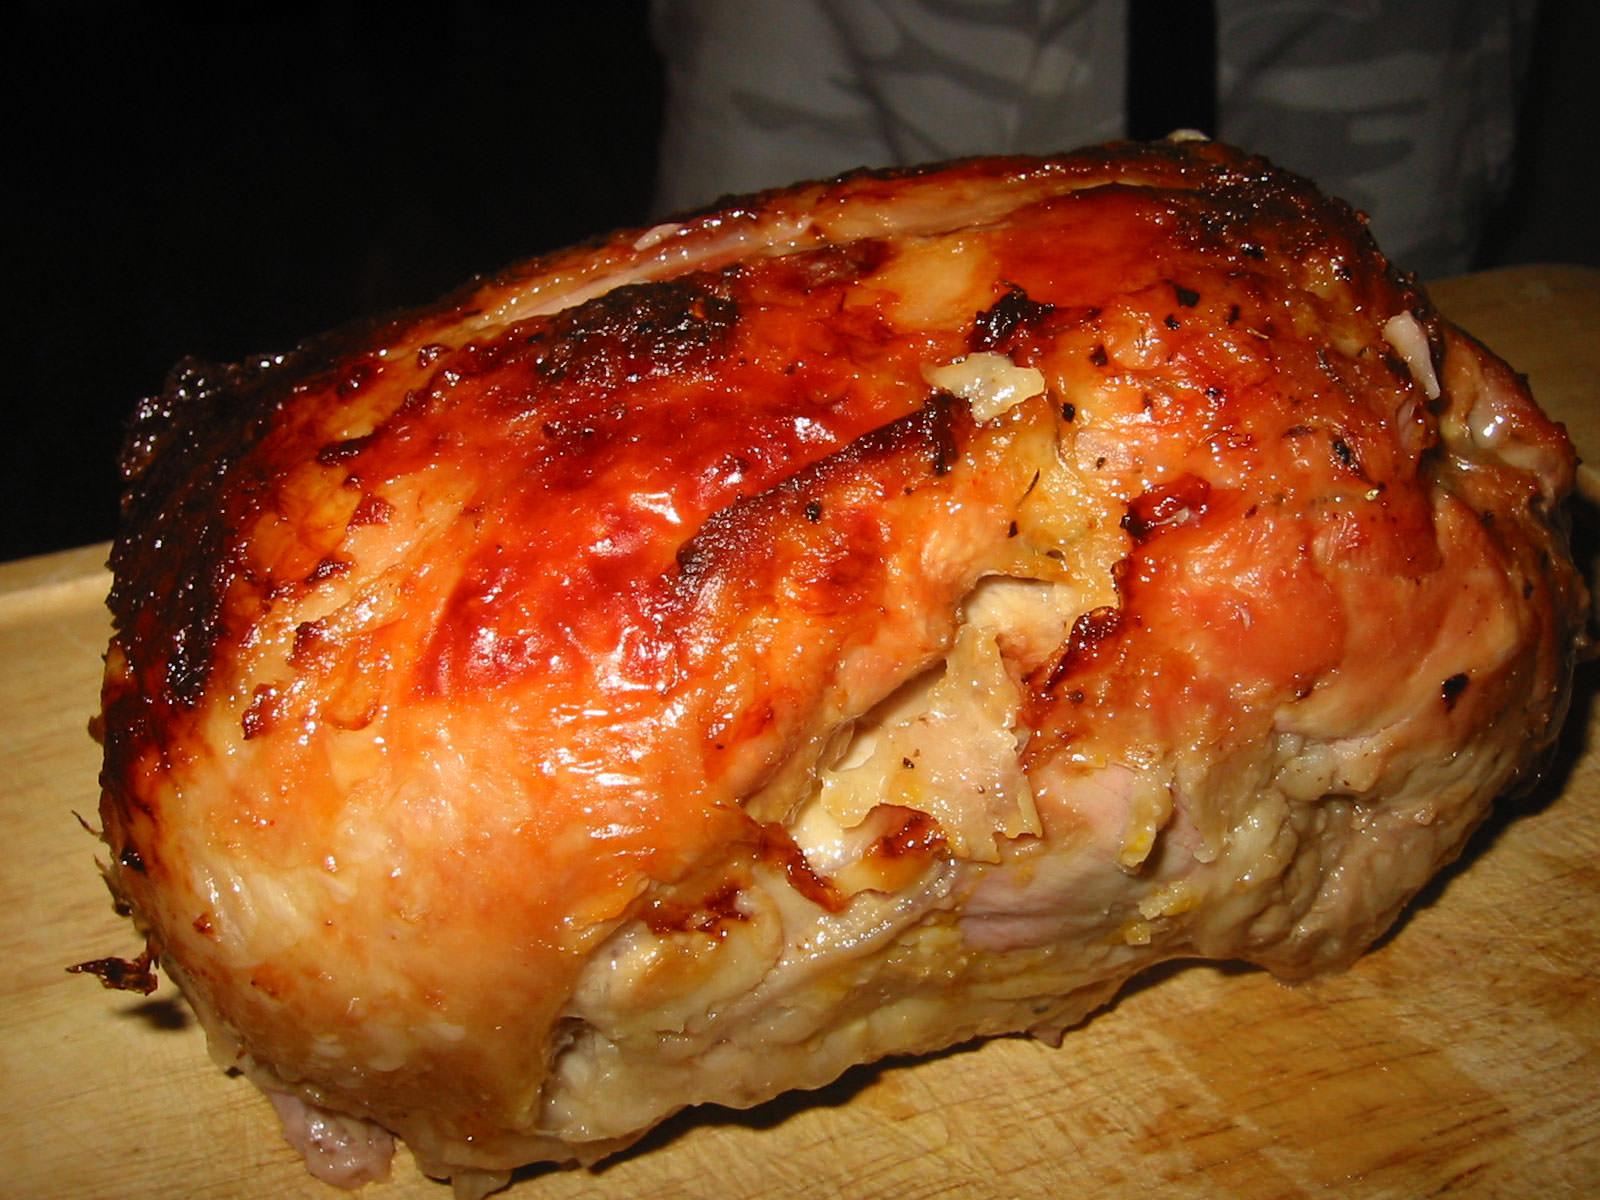 Seasoned turkey thigh roast